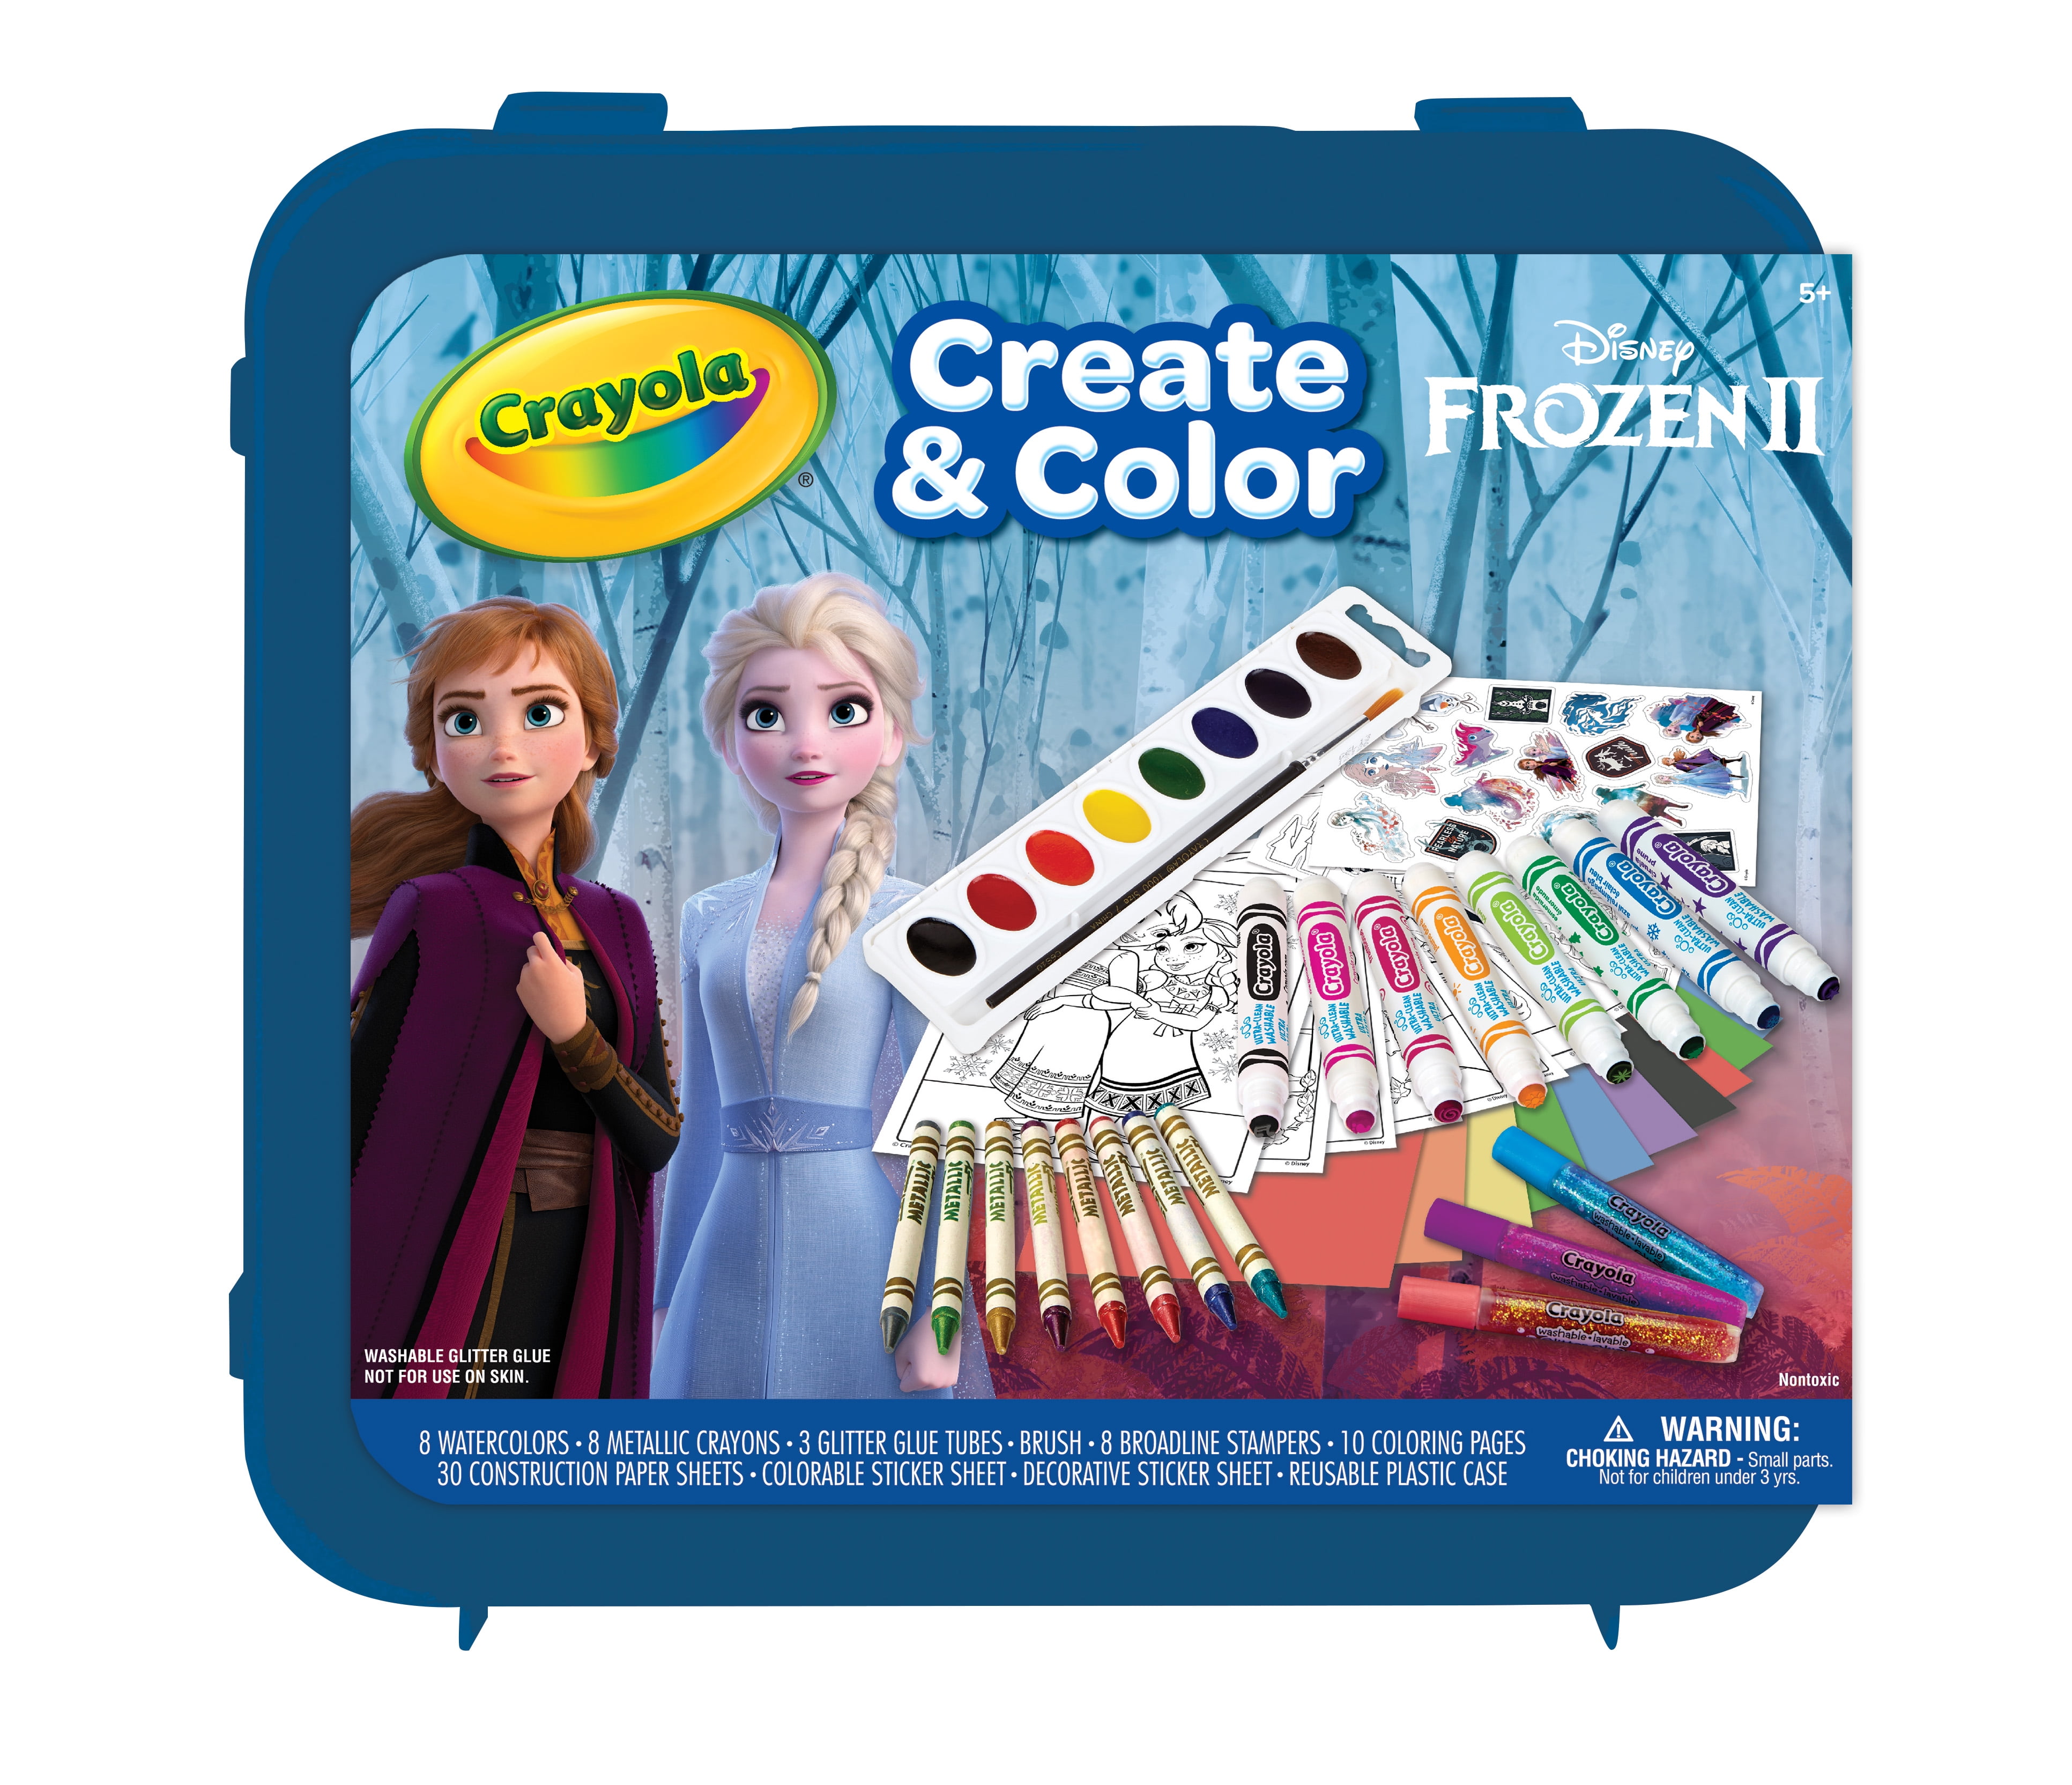 Frozen 2 Inspiration Art Case, Art Supplies, Crayola.com